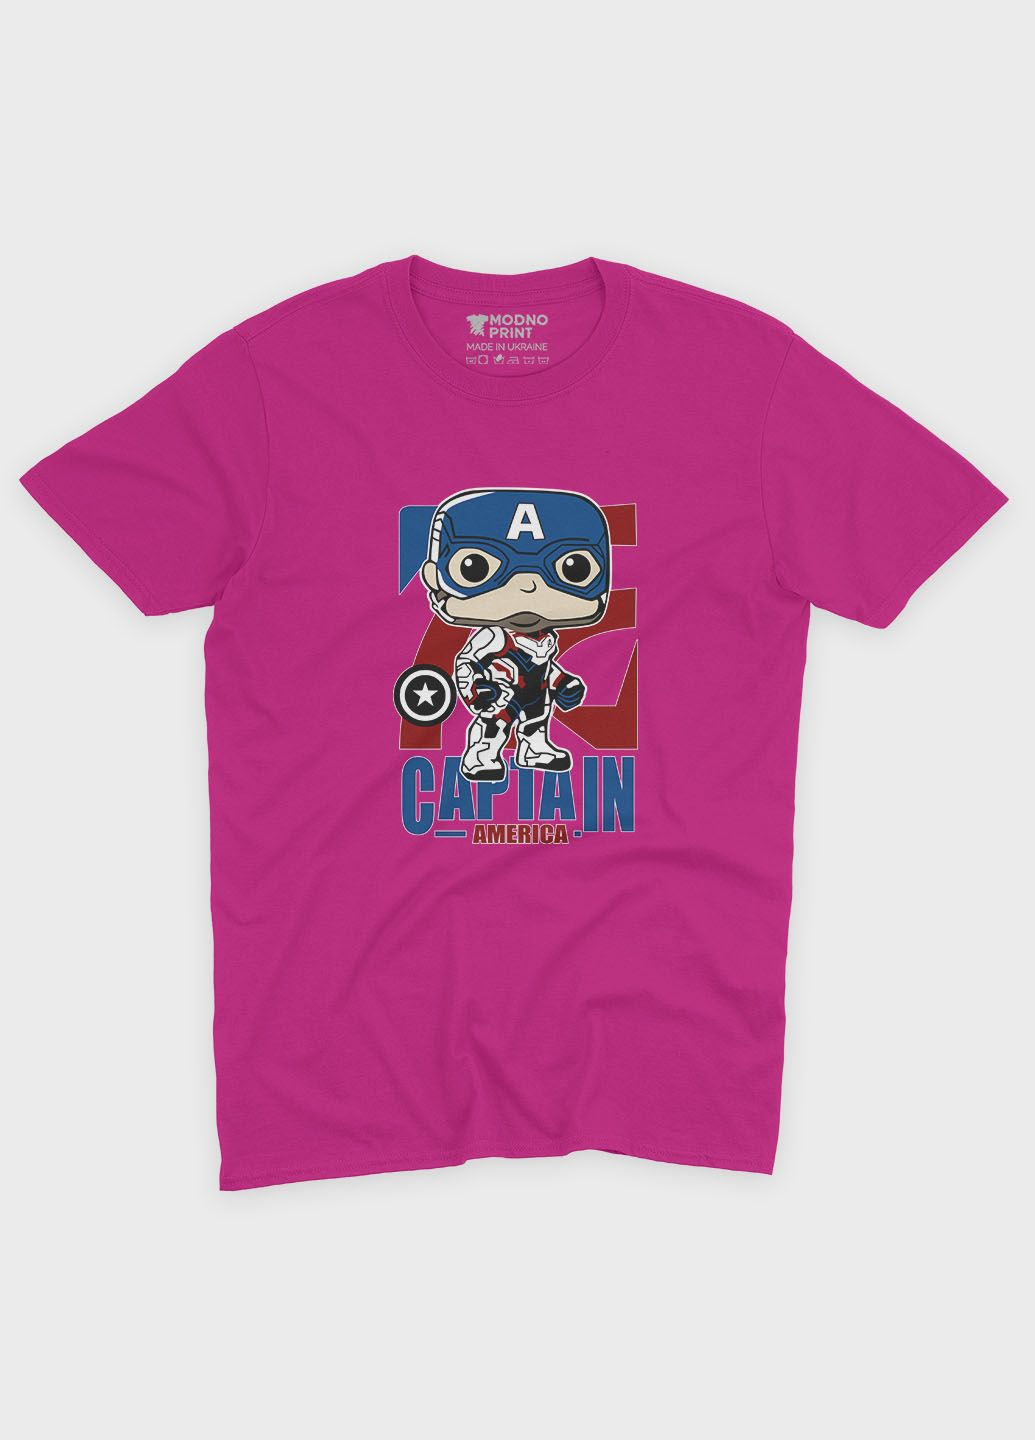 Рожева демісезонна футболка для хлопчика з принтом супергероя - капітан америка (ts001-1-fuxj-006-022-007-b) Modno